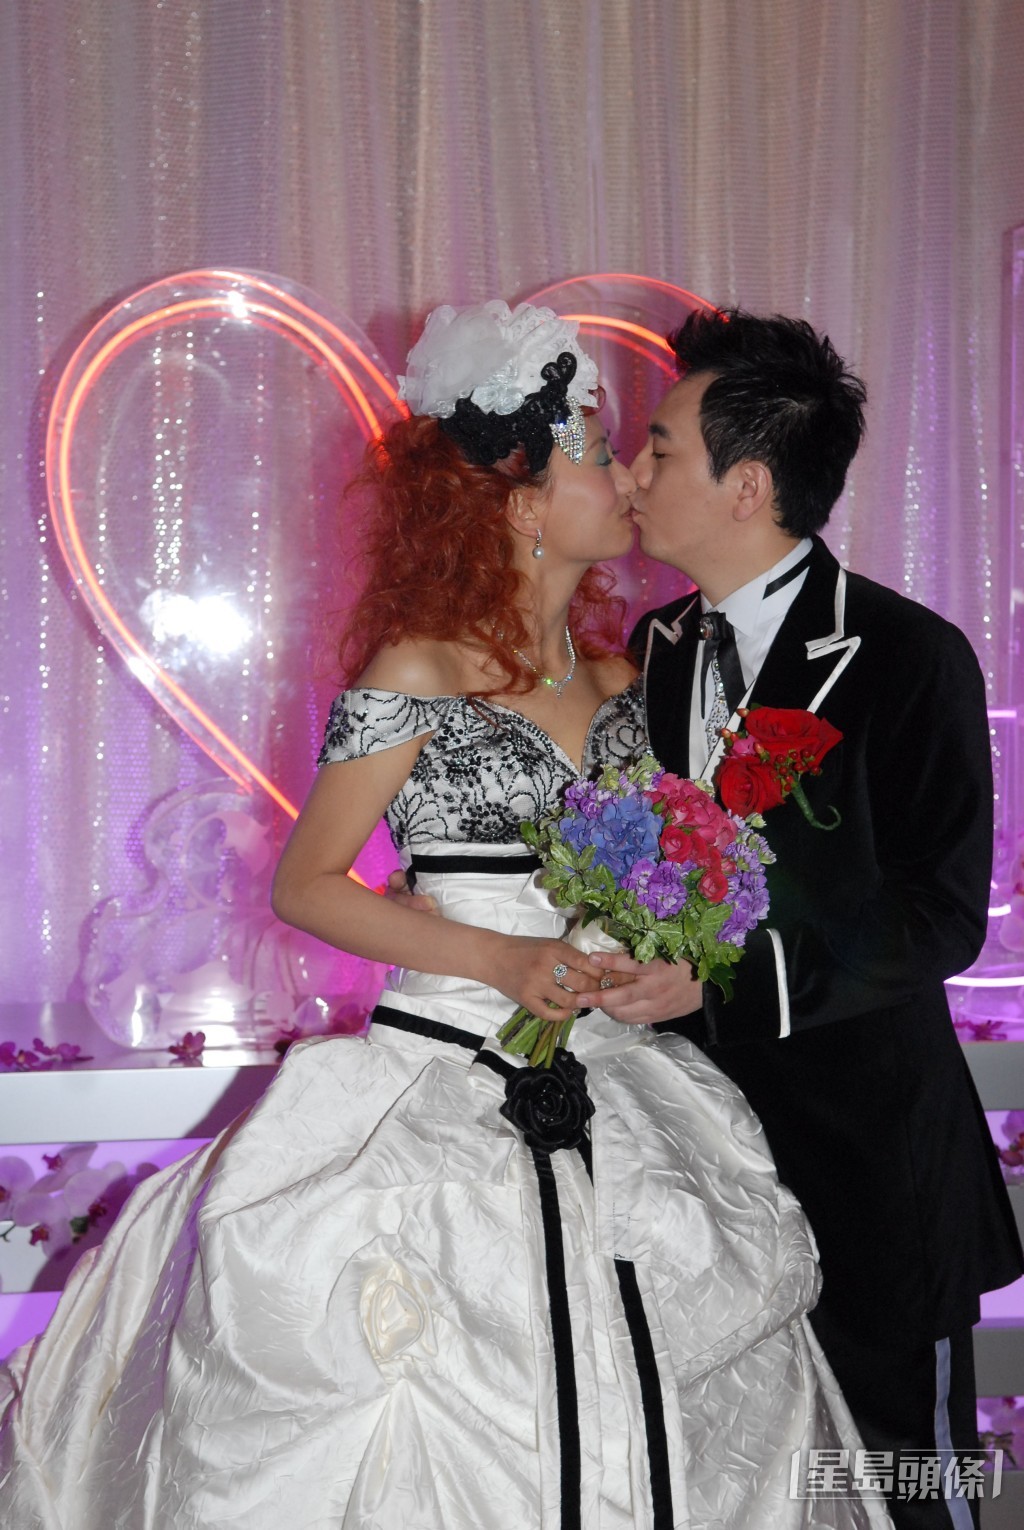 汪琳於2008年與拍拖五年、從事廣告業的男友Joey結婚。